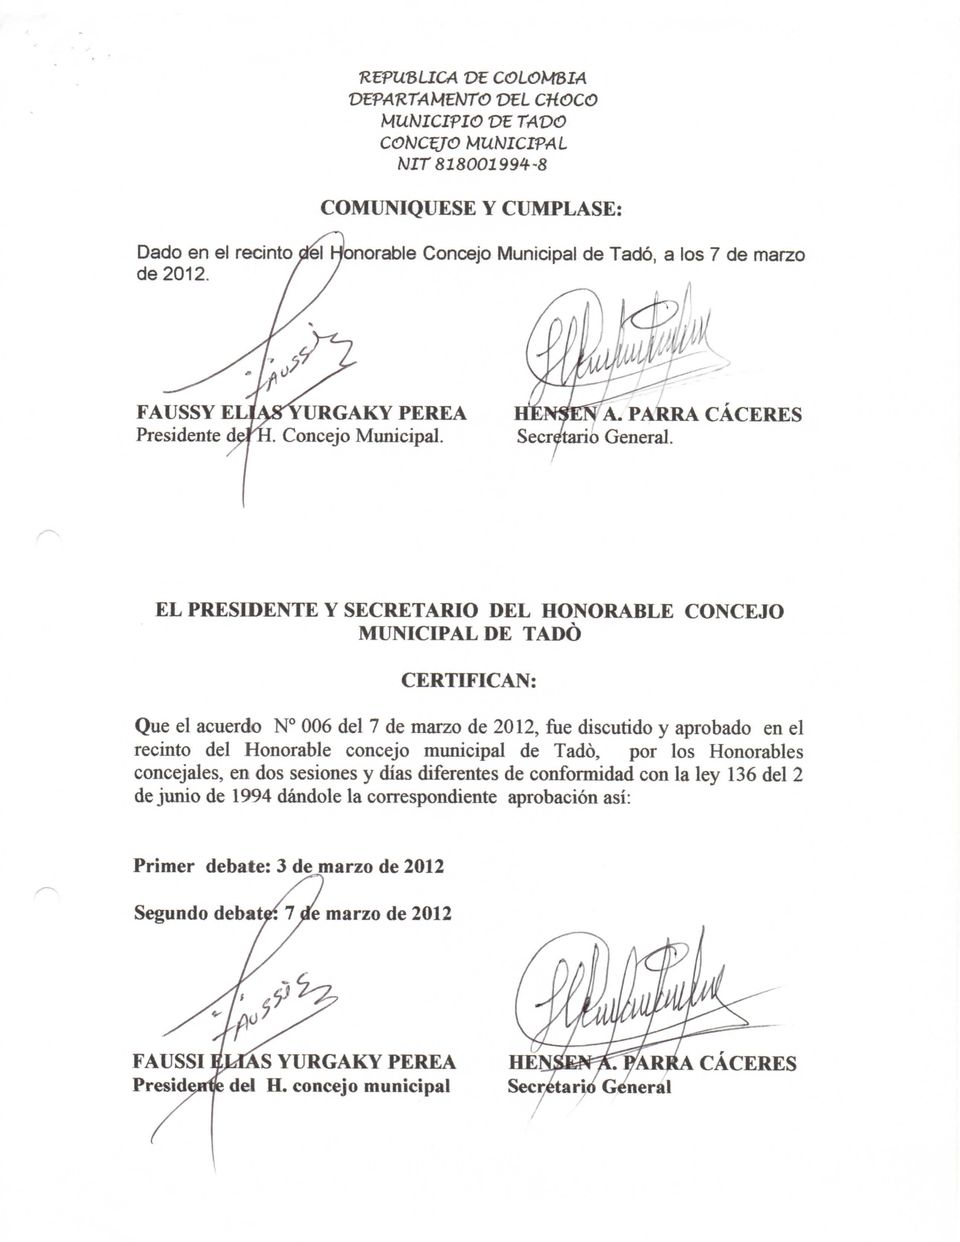 Honorable concejo municipal de Tadó, por los Honorables concejales, en dos sesiones y días diferentes de